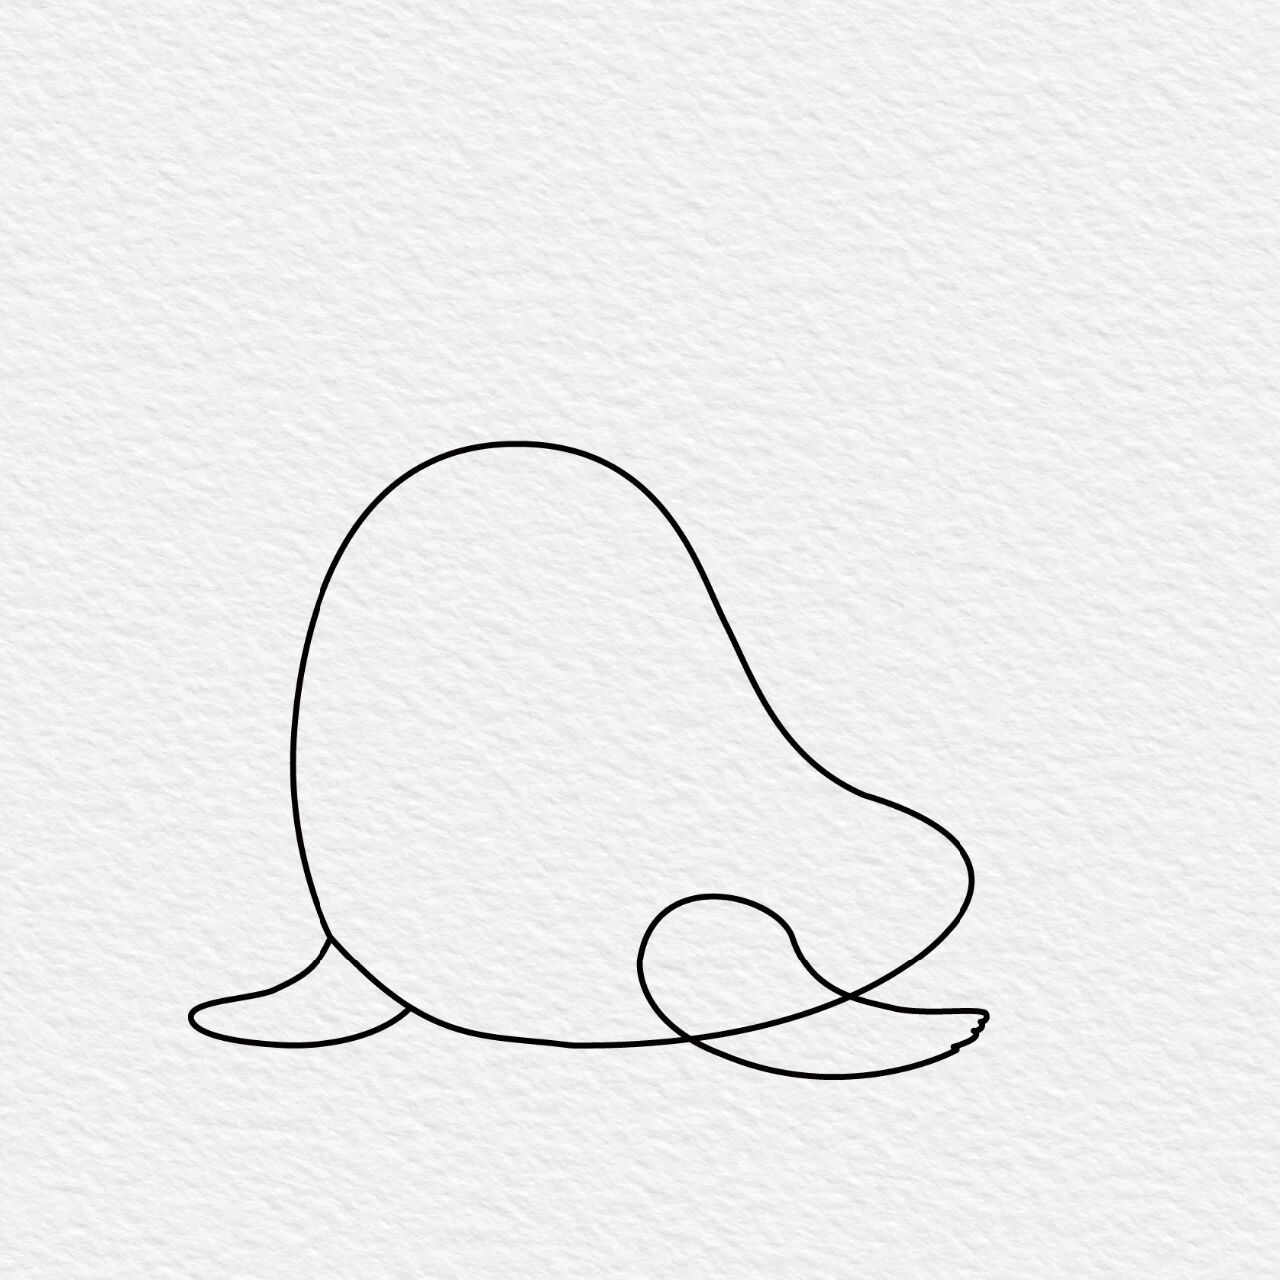 可爱小海豹简笔画图片